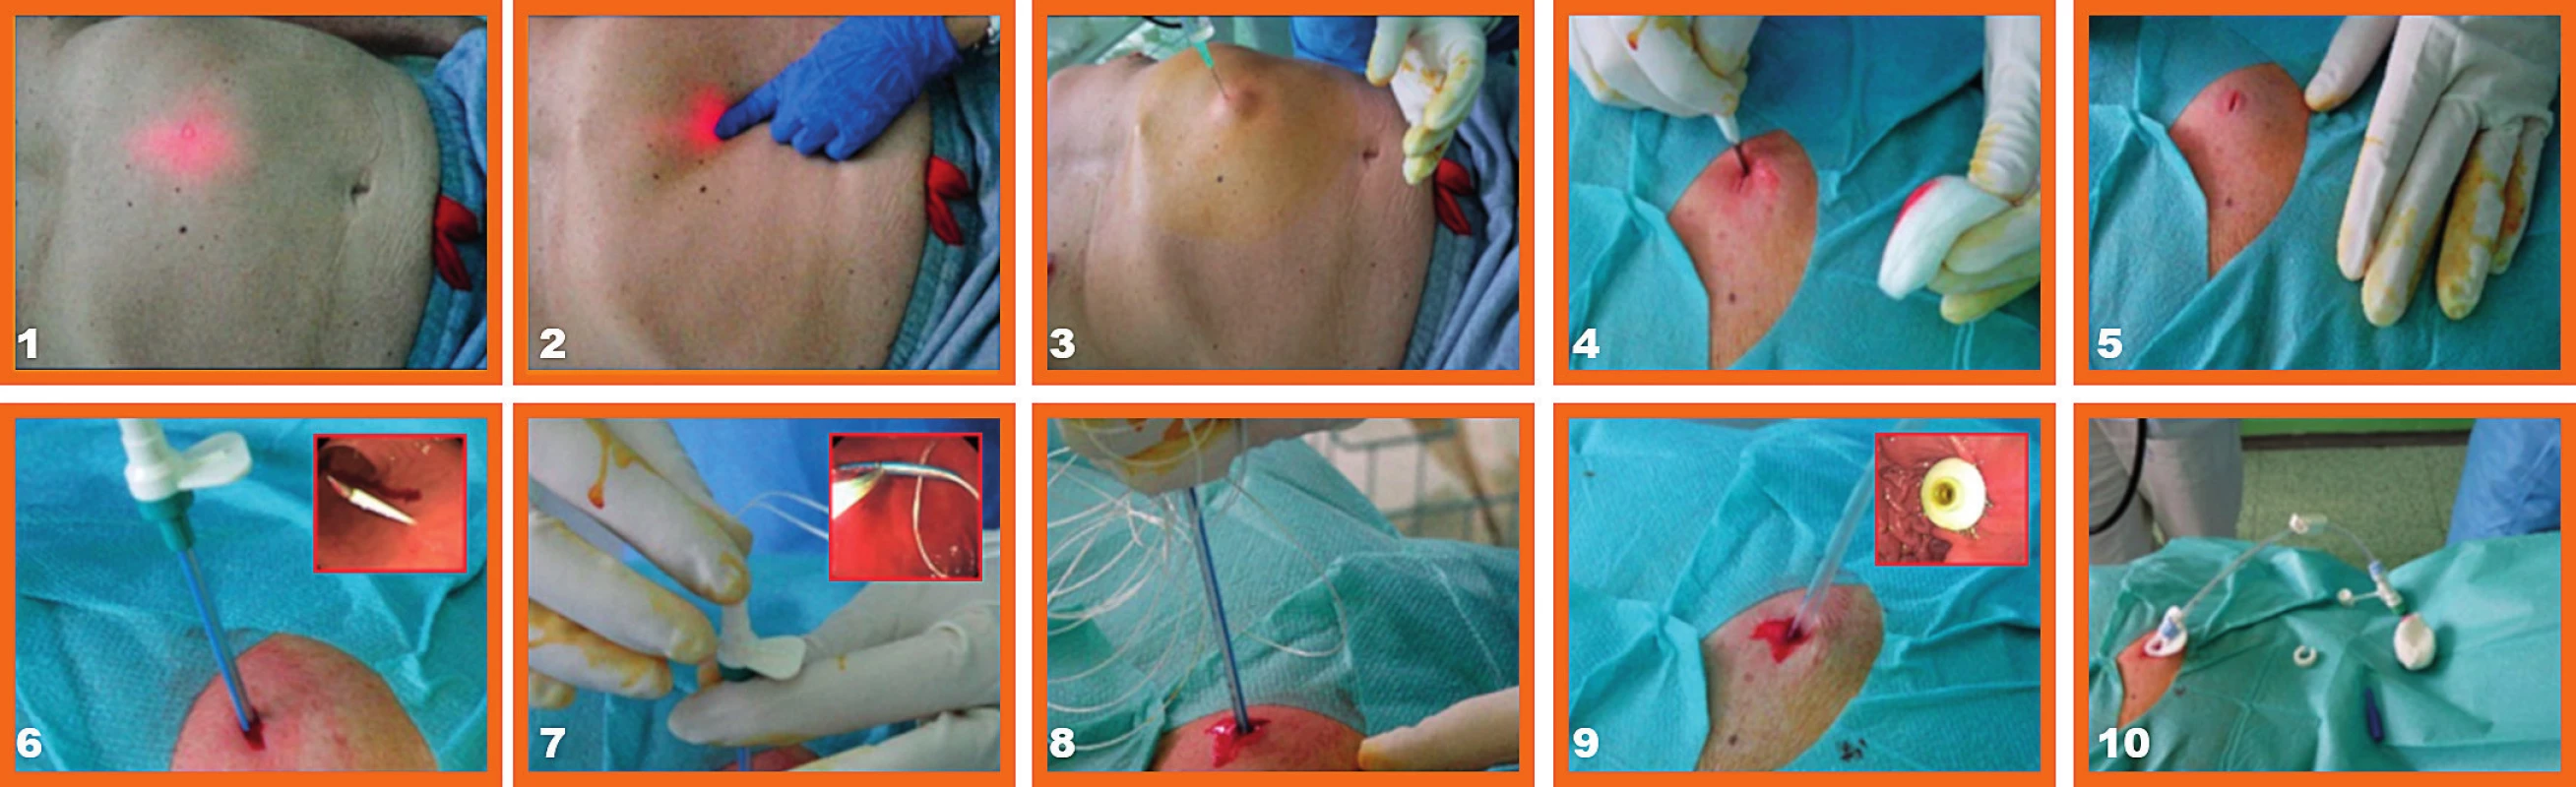 Schematický obrázok perkutánnej endoskopickej gastrostómie (Endoskopická ambulancia III. Internej kliniky LF UK a UNB v Bratislave) <br>1 – transiluminácia, 2 – digitálne potvrdenie transiluminácie, 3 – lokálne aplikovaná analgézia 1% Mesocainom, 4 – skalpelom realizovaná kožná incízia, 5 – kožná incízia, 6 – kožnou incíziou zavedená punkčná ihla aj so zavádzačom, pohľad zvnútra na hrot ihly, 7 – cez zavádzač zavedené ťažné vlákno do žalúdka, pohľad do žalúdka, kde je vlákno zachytené slučkou a vyvedené ústami von, 8 – ťahom čiže „pull“ metódou vyvedená PEG sonda cez brušnú stenu, 9 – vyvedená PEG sonda, pohľad z vnútra na fixačnú platničku PEG-u, 10 – pohľad na zavedenú PEG sondu